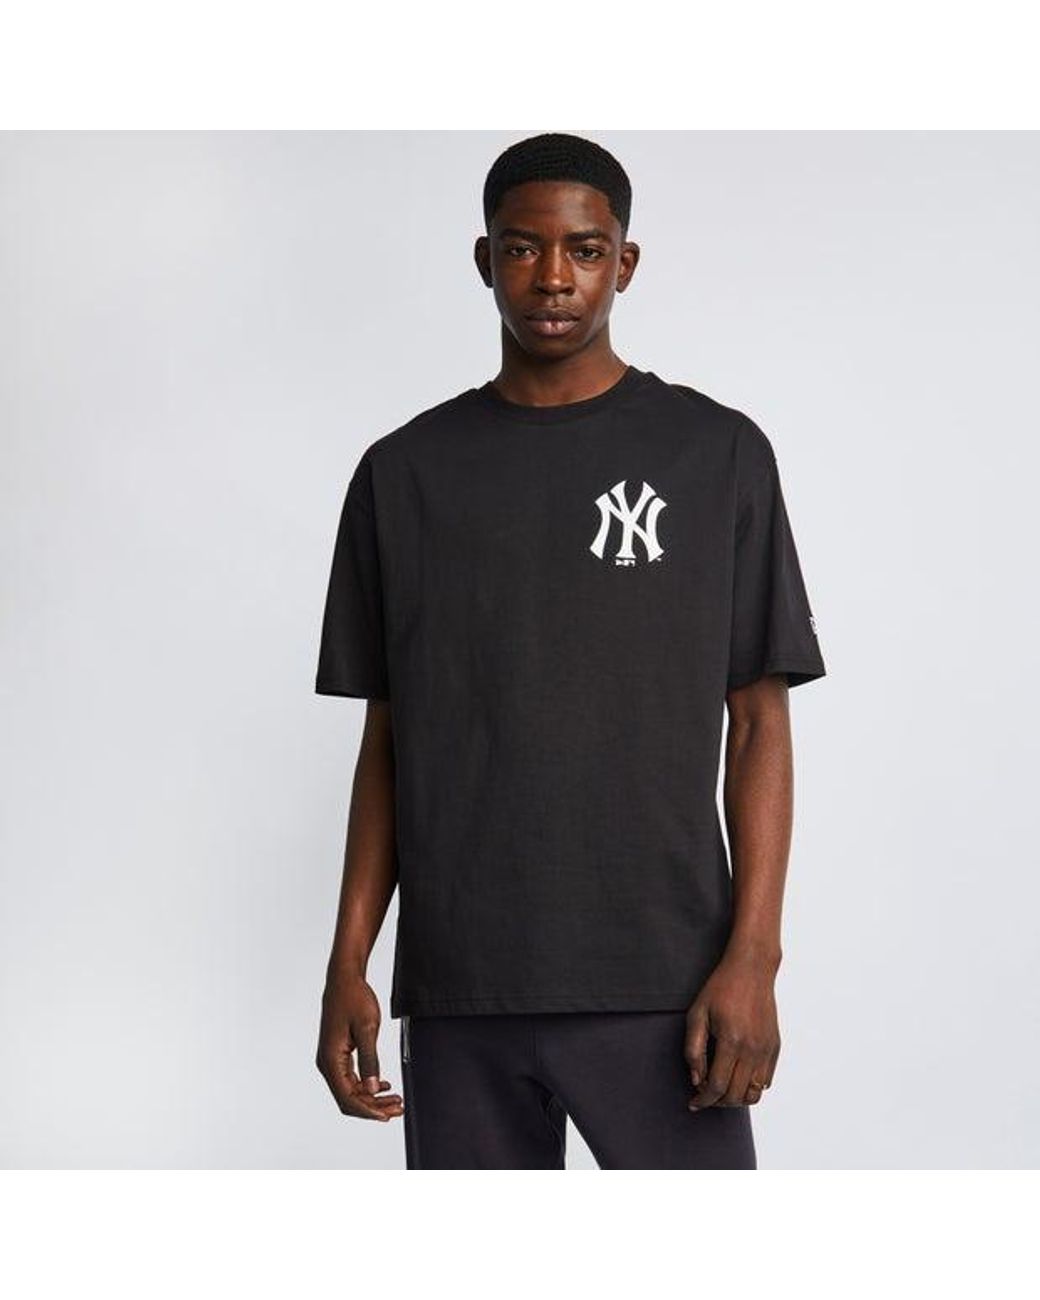 KTZ Mlb New York Yankees T-shirts in Black for Men